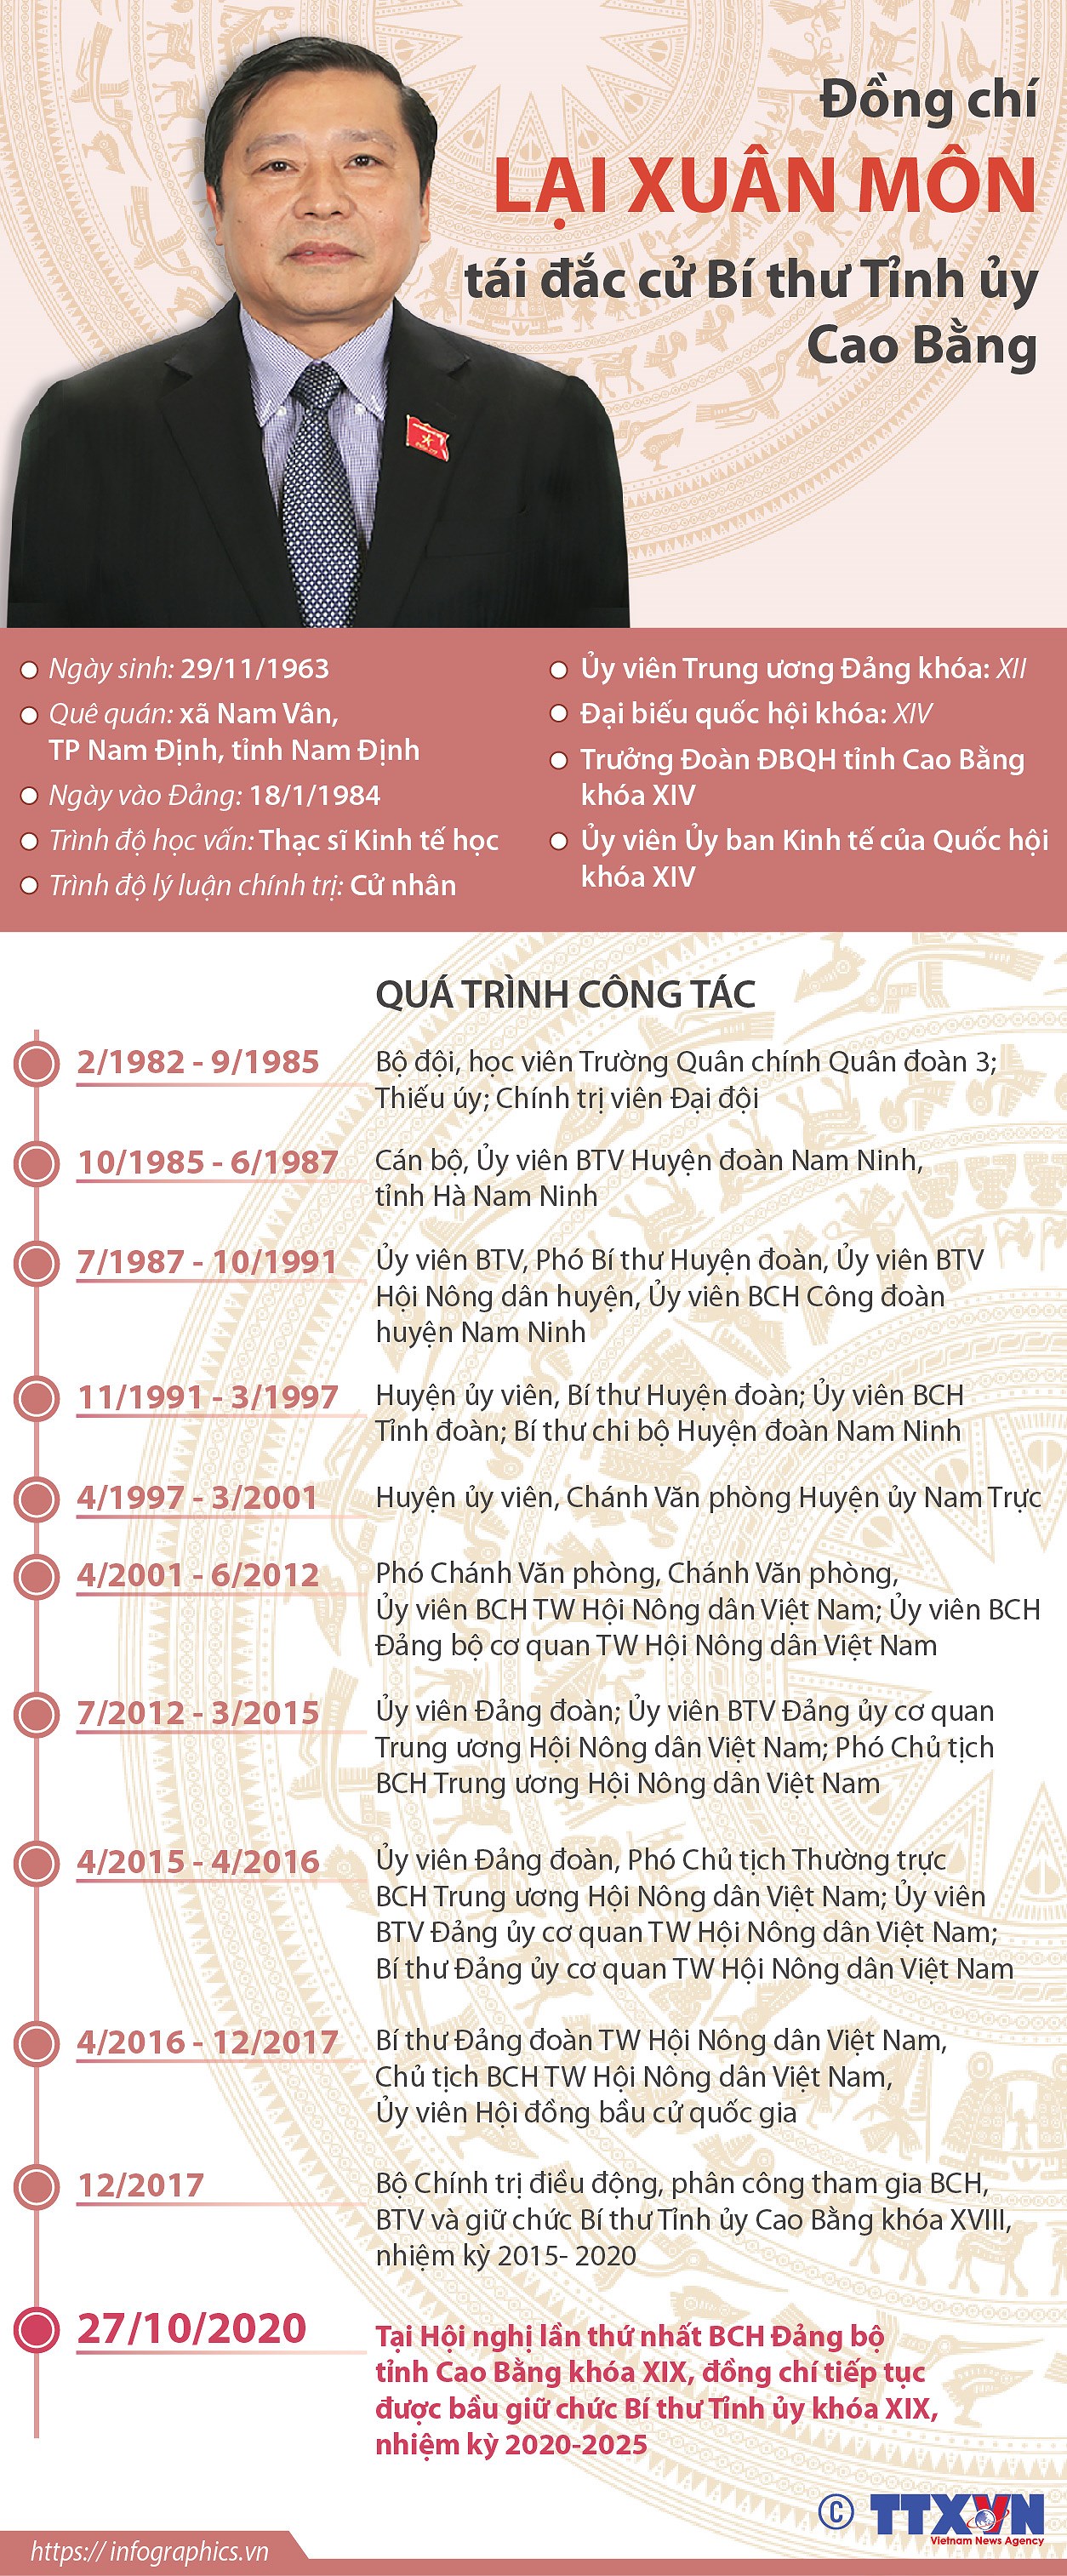 [Infographics] Ong Lai Xuan Mon tai dac cu Bi thu Tinh uy Cao Bang hinh anh 1